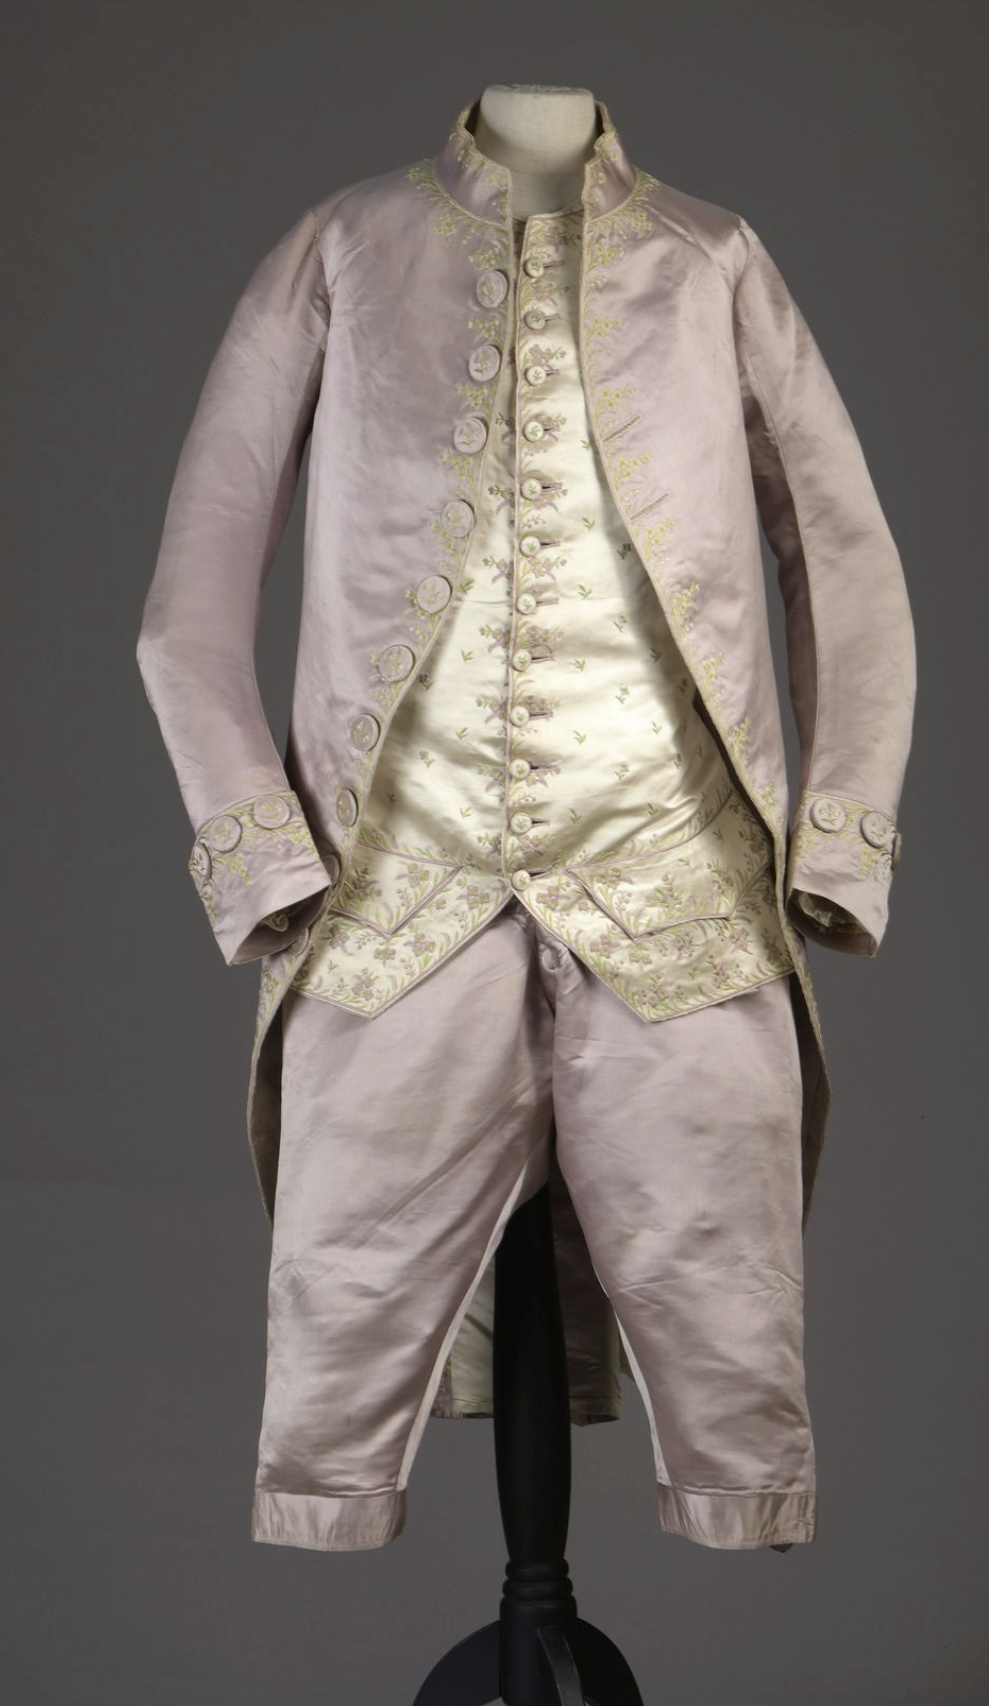 La mode et les habits masculins au XVIIIe siècle - Page 4 Captu898